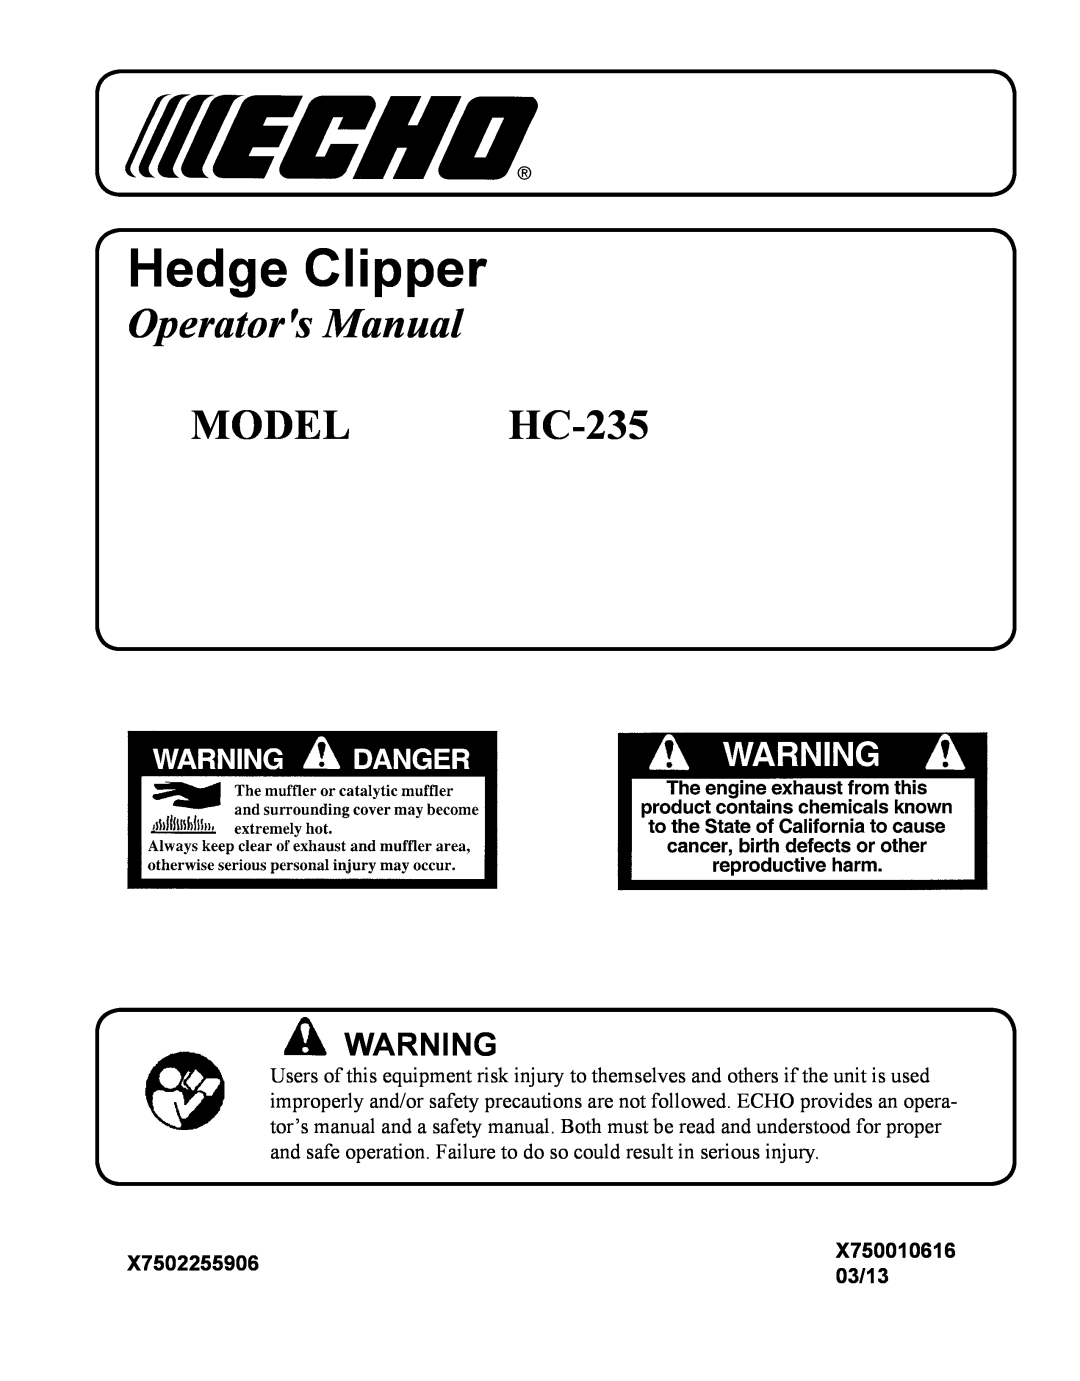 Echo manual X7502255906, 03/13, Hedge Clipper, Operators Manual, MODEL HC-235, X750010616 